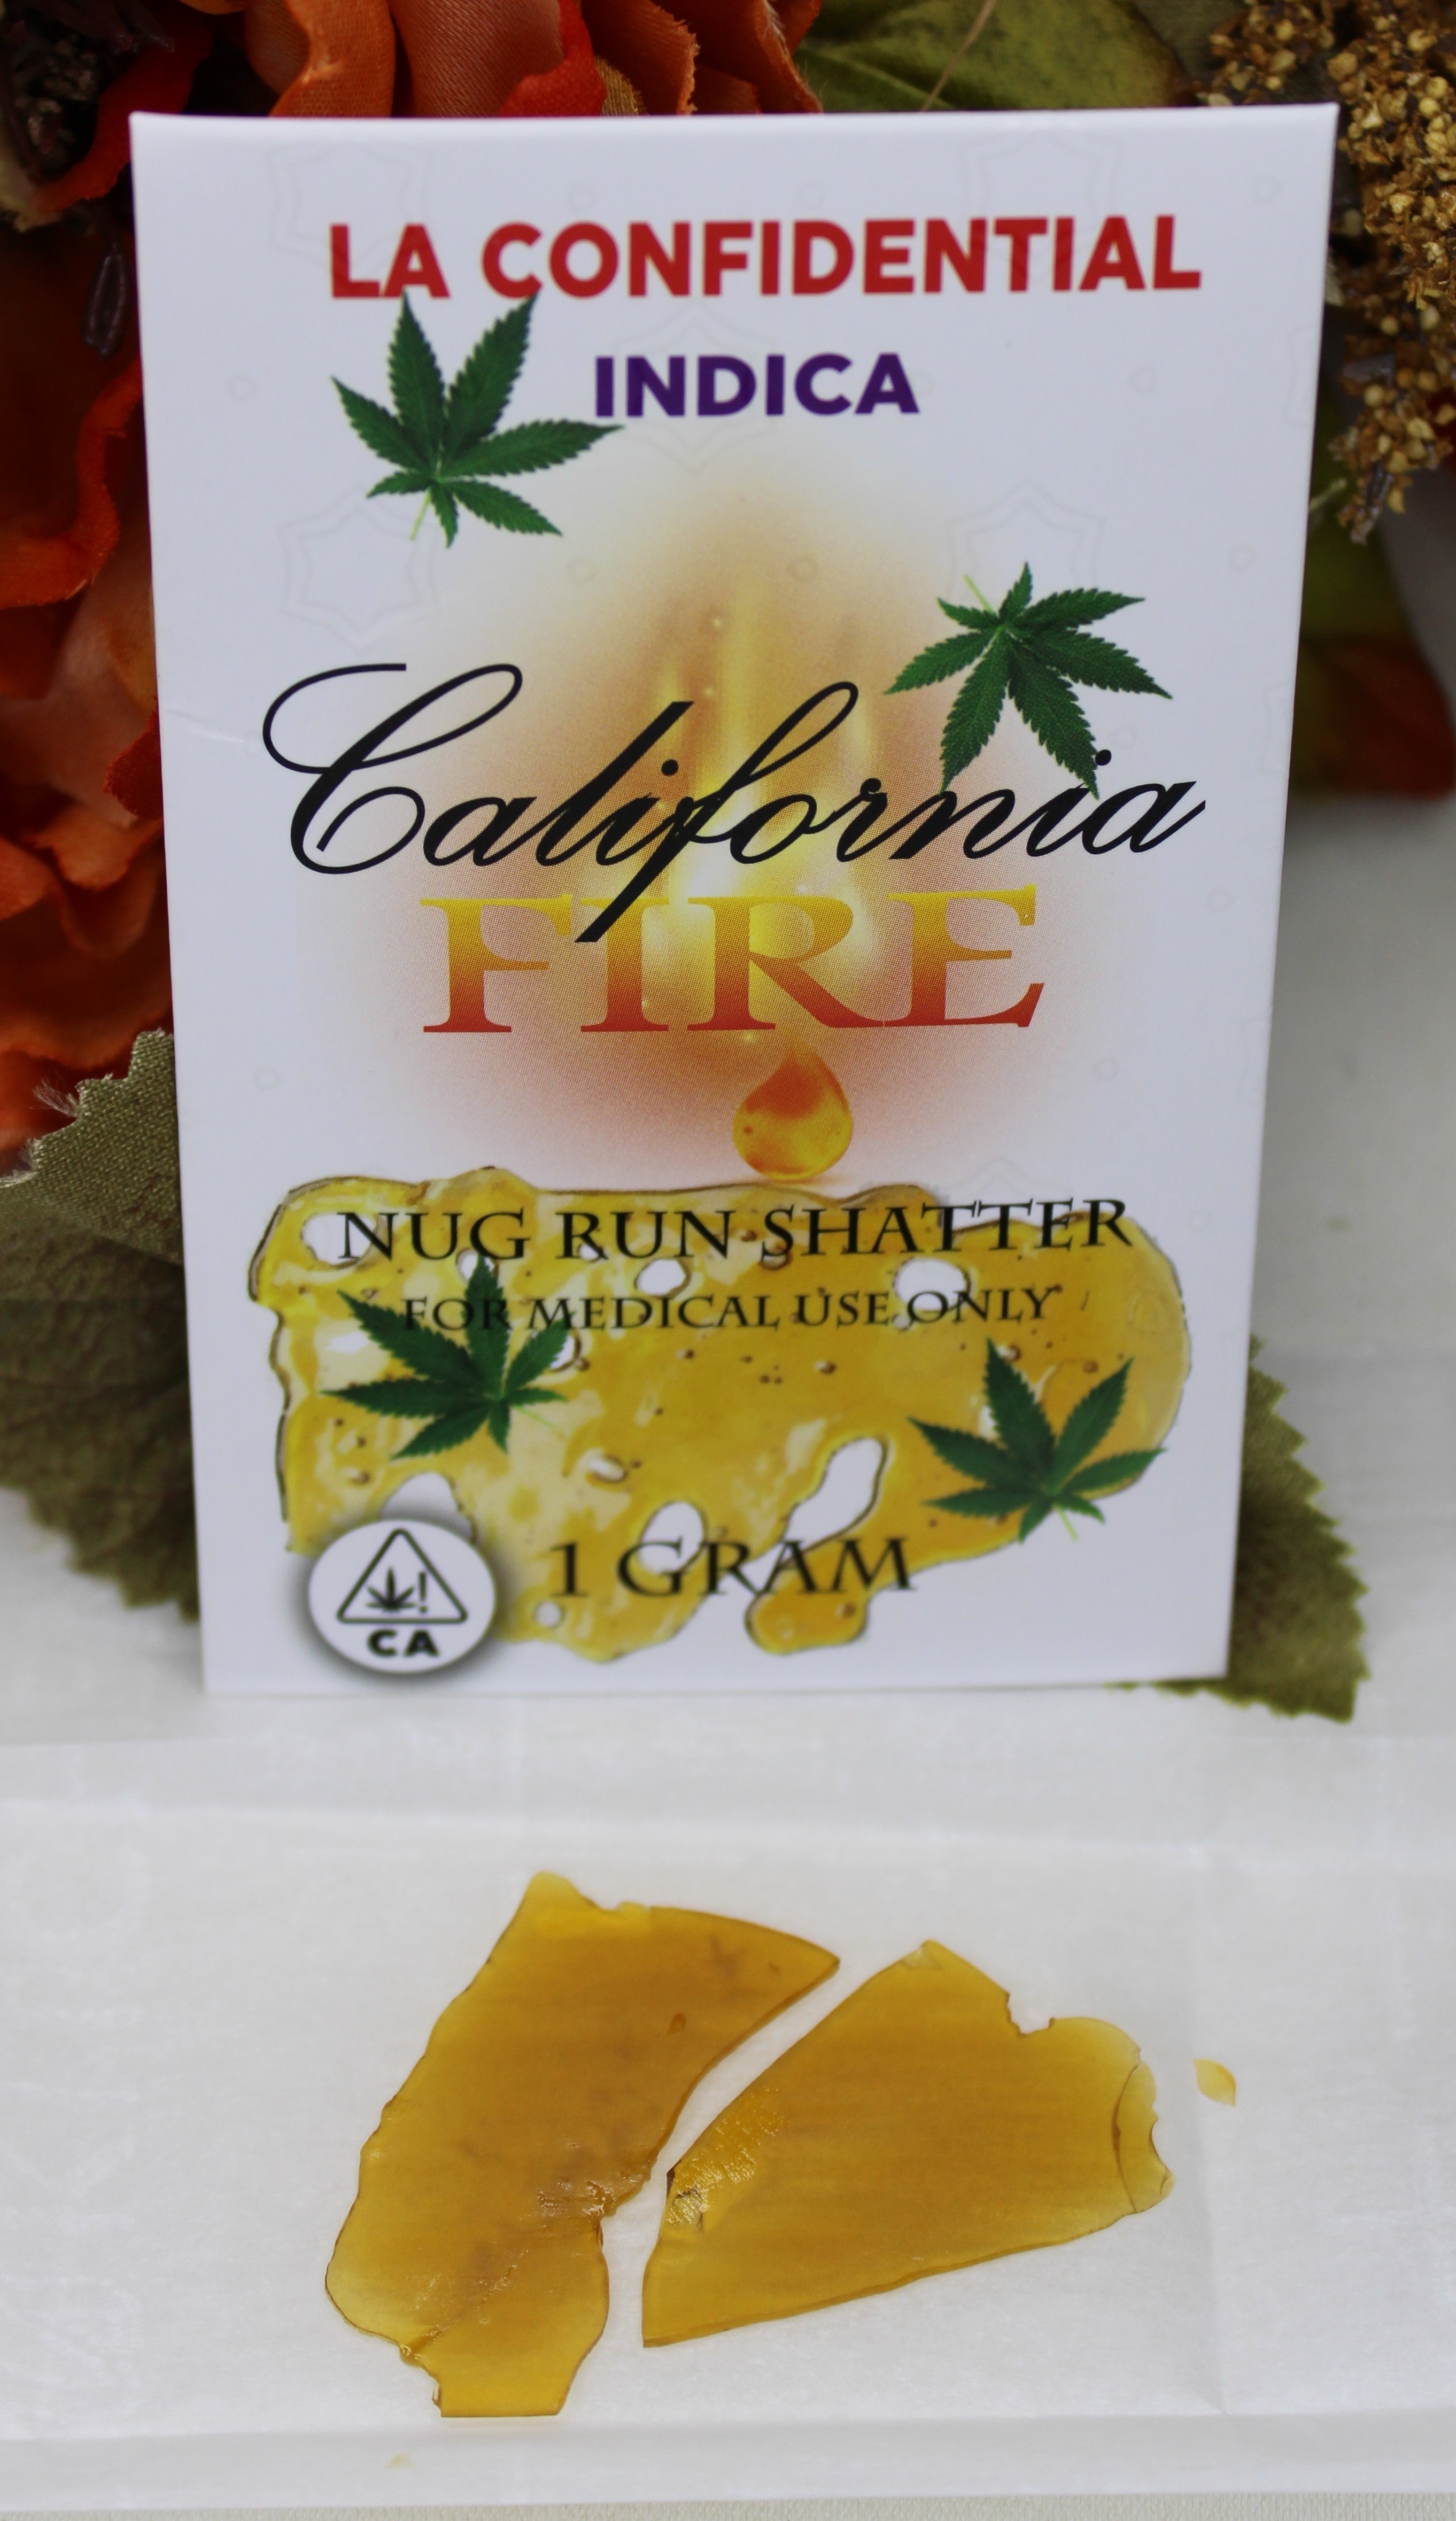 California Fire Nug Run Shatter "La Confidentital" (1g)